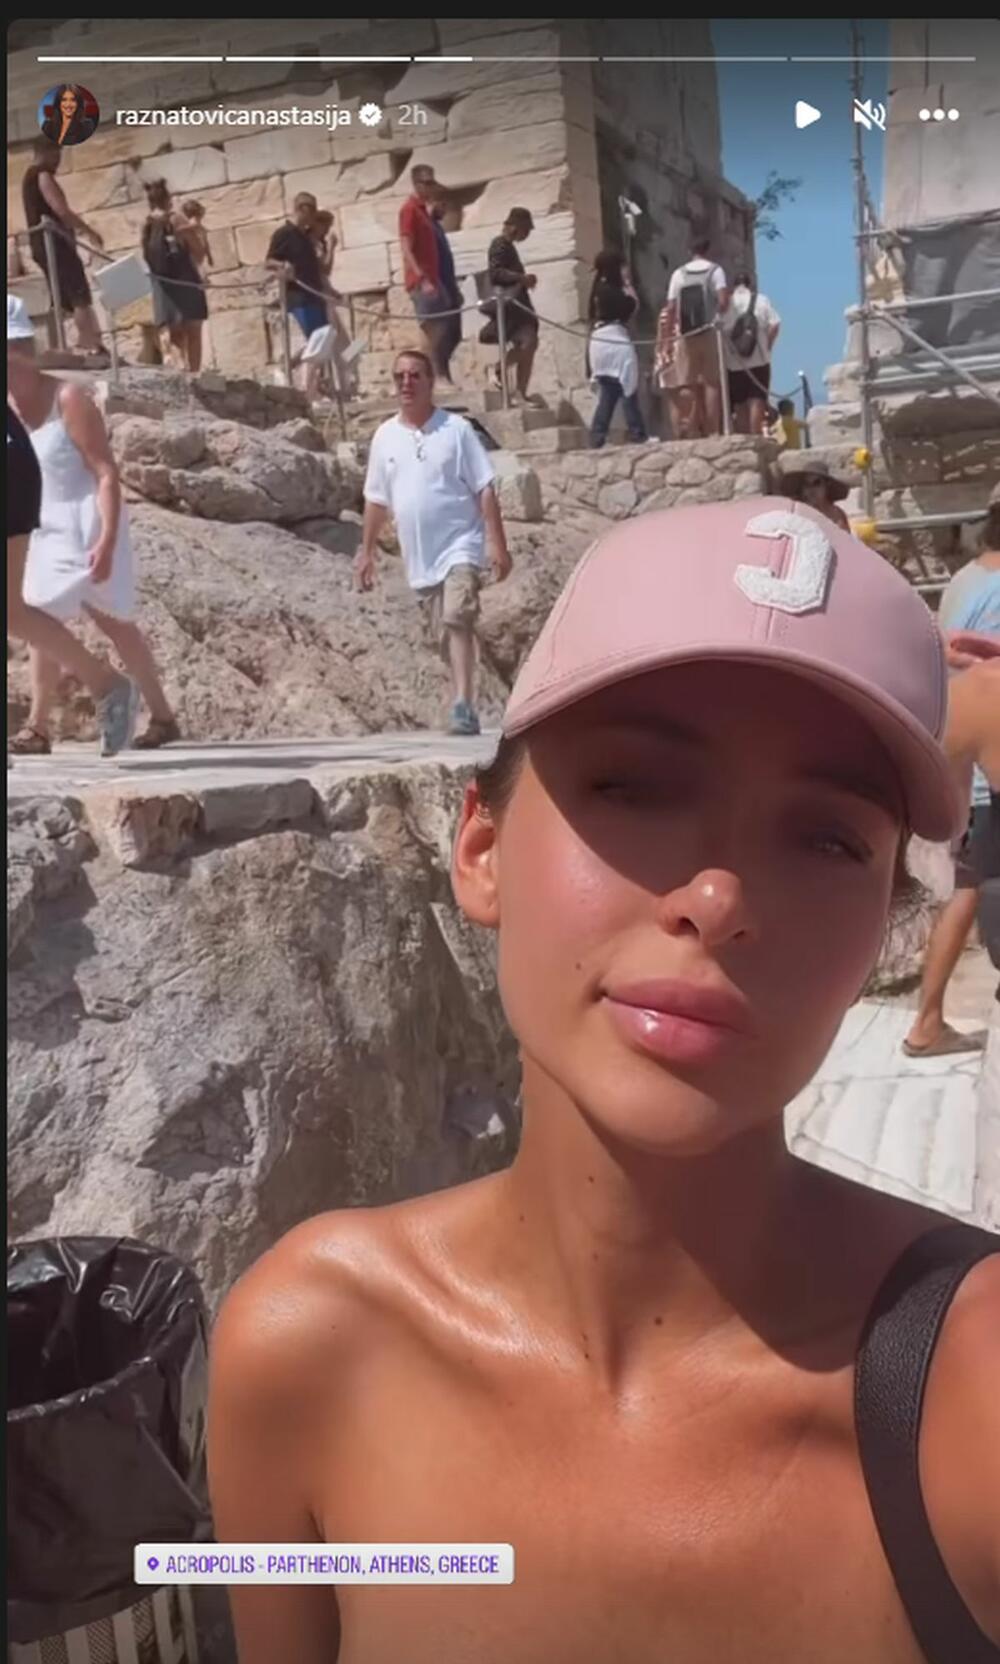 <p>Anastasija Ražnatović doputovala je u Atinu, a za vreli letnji dan birala je glavni aksesoar u pink boji</p>